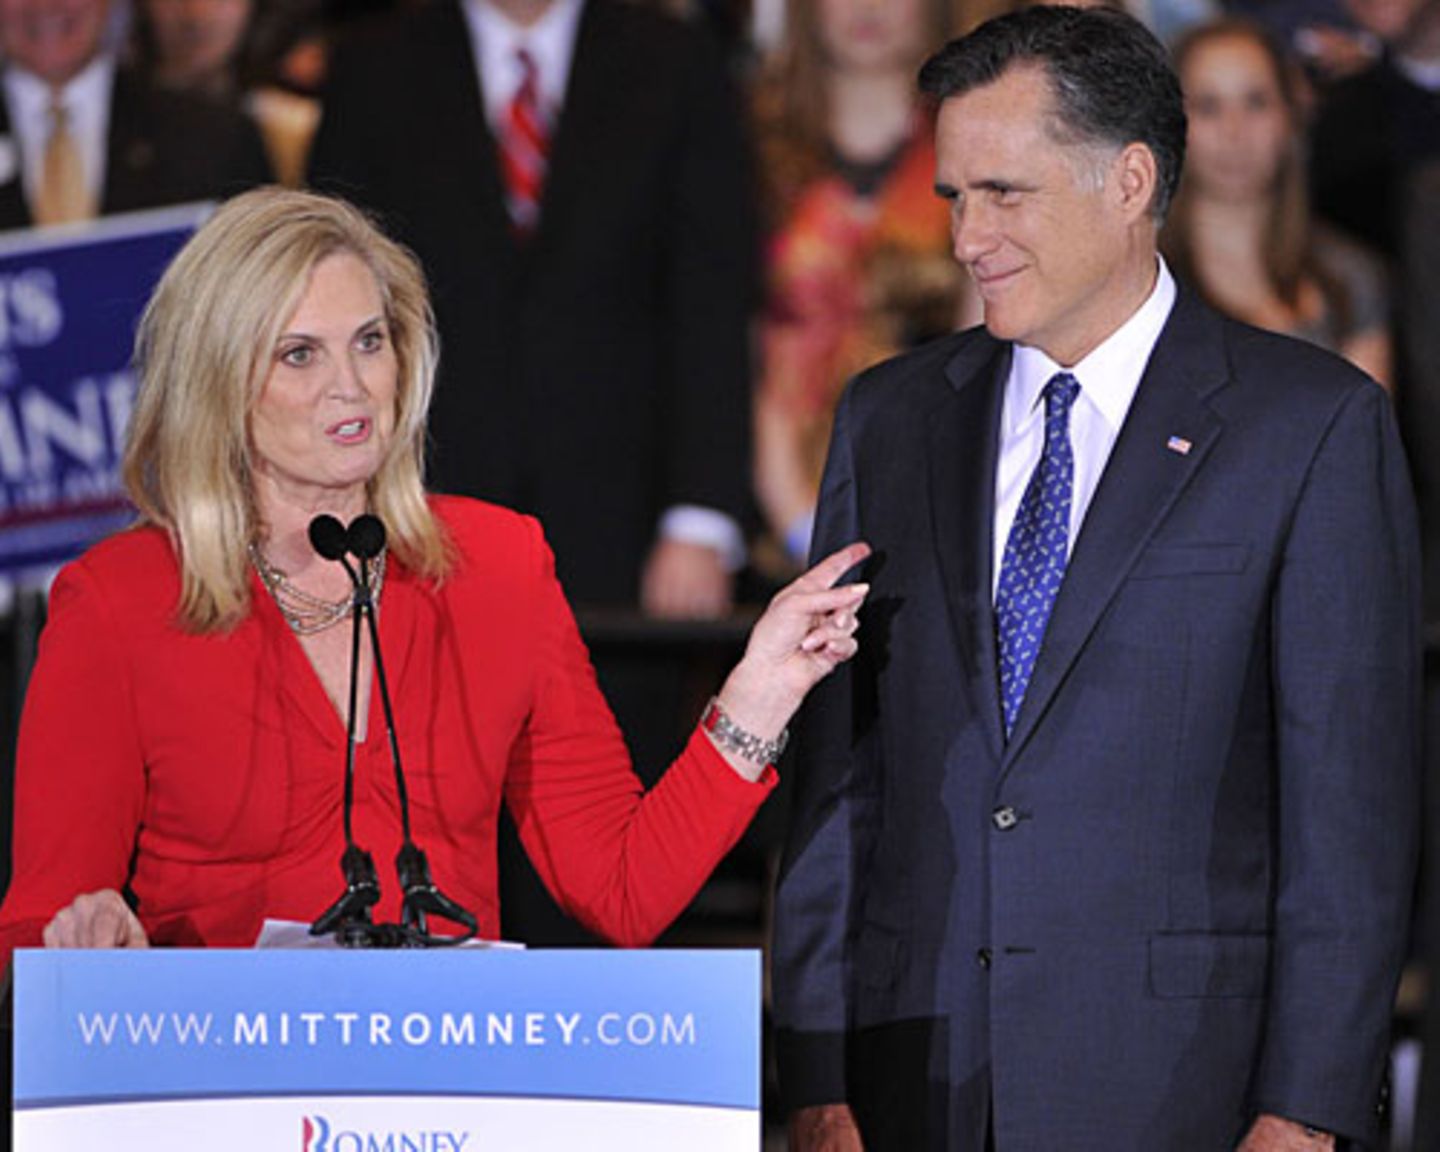 Ann Romney ist die Geheimwaffe des oft etwas hölzern wirkenden US-Republikaners Mitt Romneys, dem es schwerfällt, Sympathien zu gewinnen. Zum Auftakt des Parteitages am Dienstag in Tampa hielt seine Frau darum eine Rede. Zur besten Sendezeit des US-Fernsehens betrat sie die Bühne. Wer glaubte, sie werde Romneys Politik erklären, täuschte sich. "Heute will ich über Liebe reden", sagte sie. Mehr bei BRIGITTE.de: Michelle Obama: So stylt sich die First Lady Michelle Obama: Die Unverstellte US-Präsidenten: Das Quiz